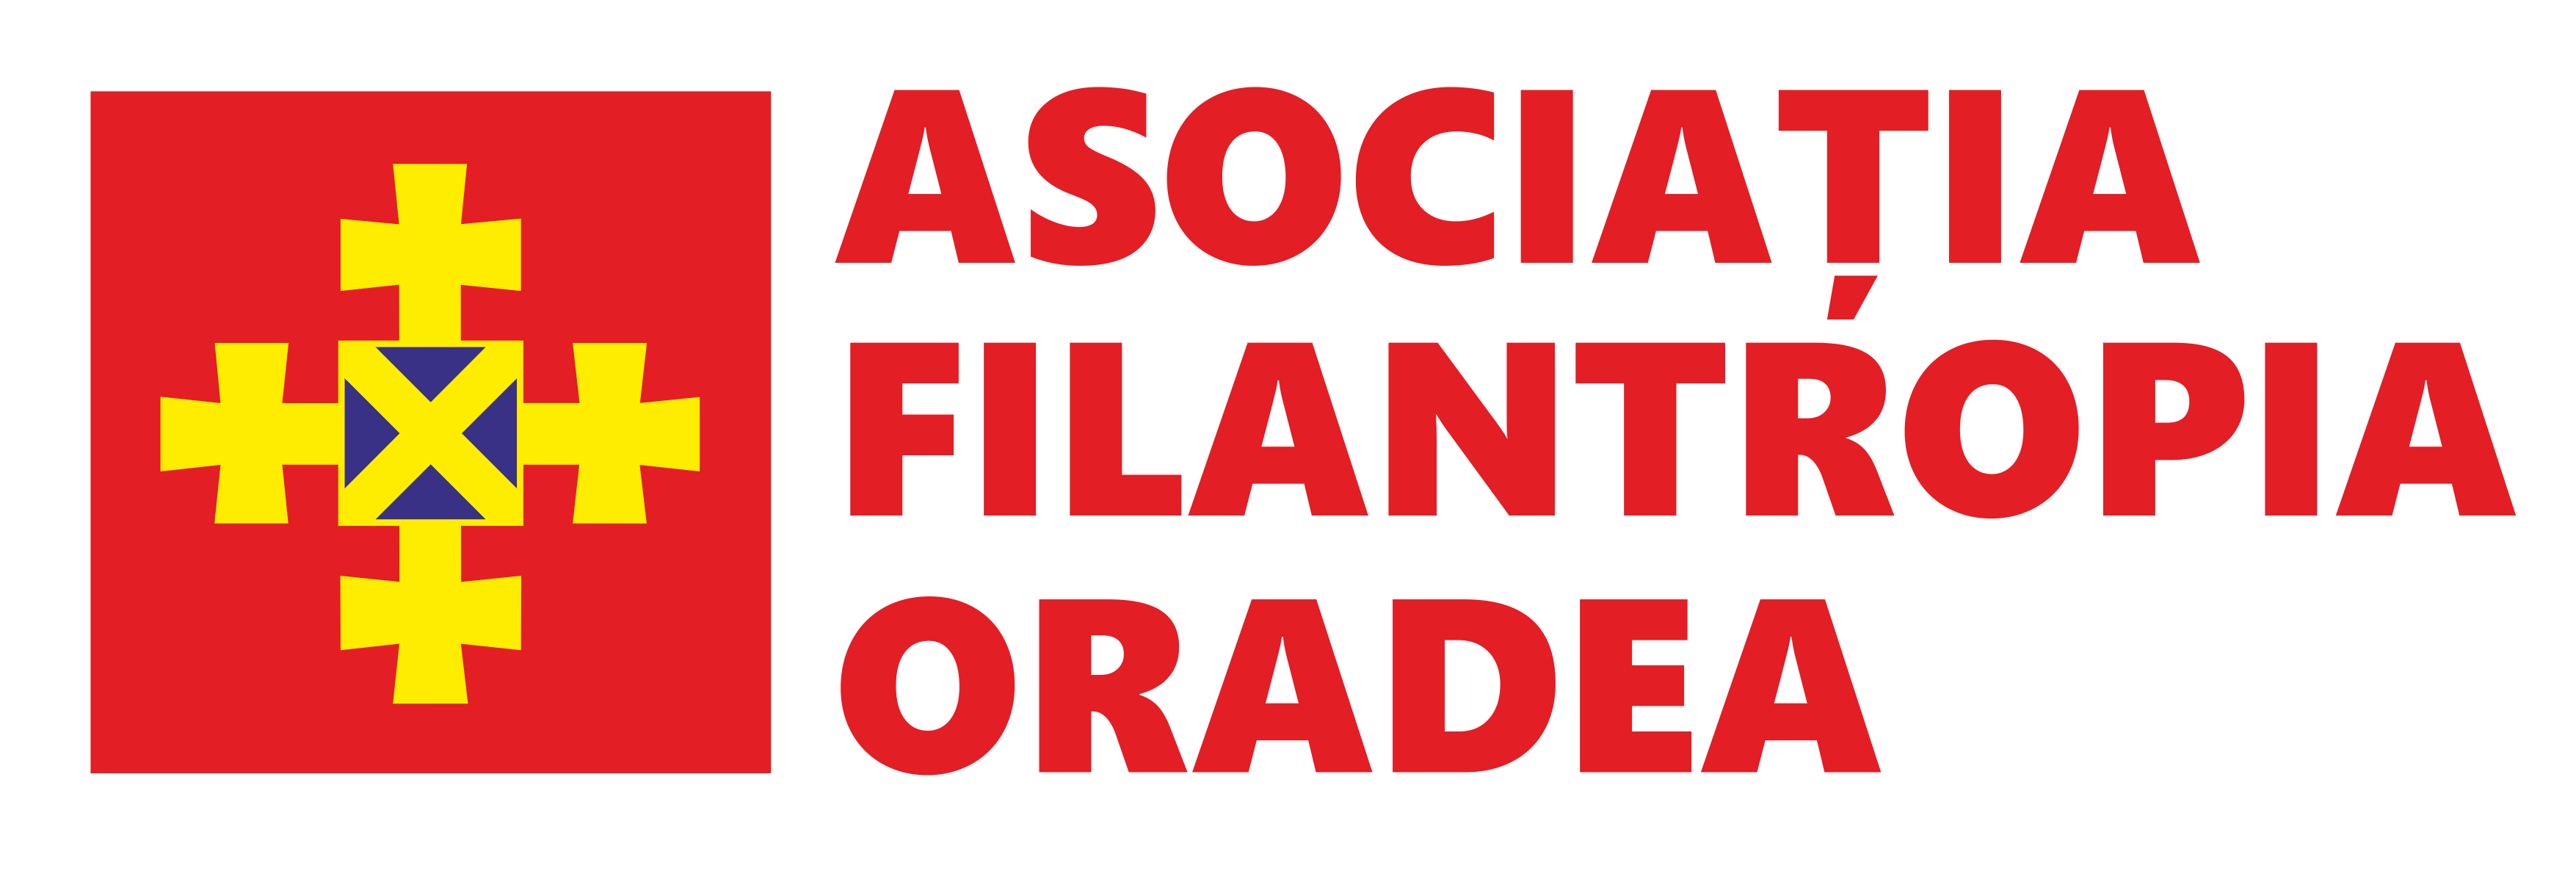 Asociația Filantropia Oradea logo